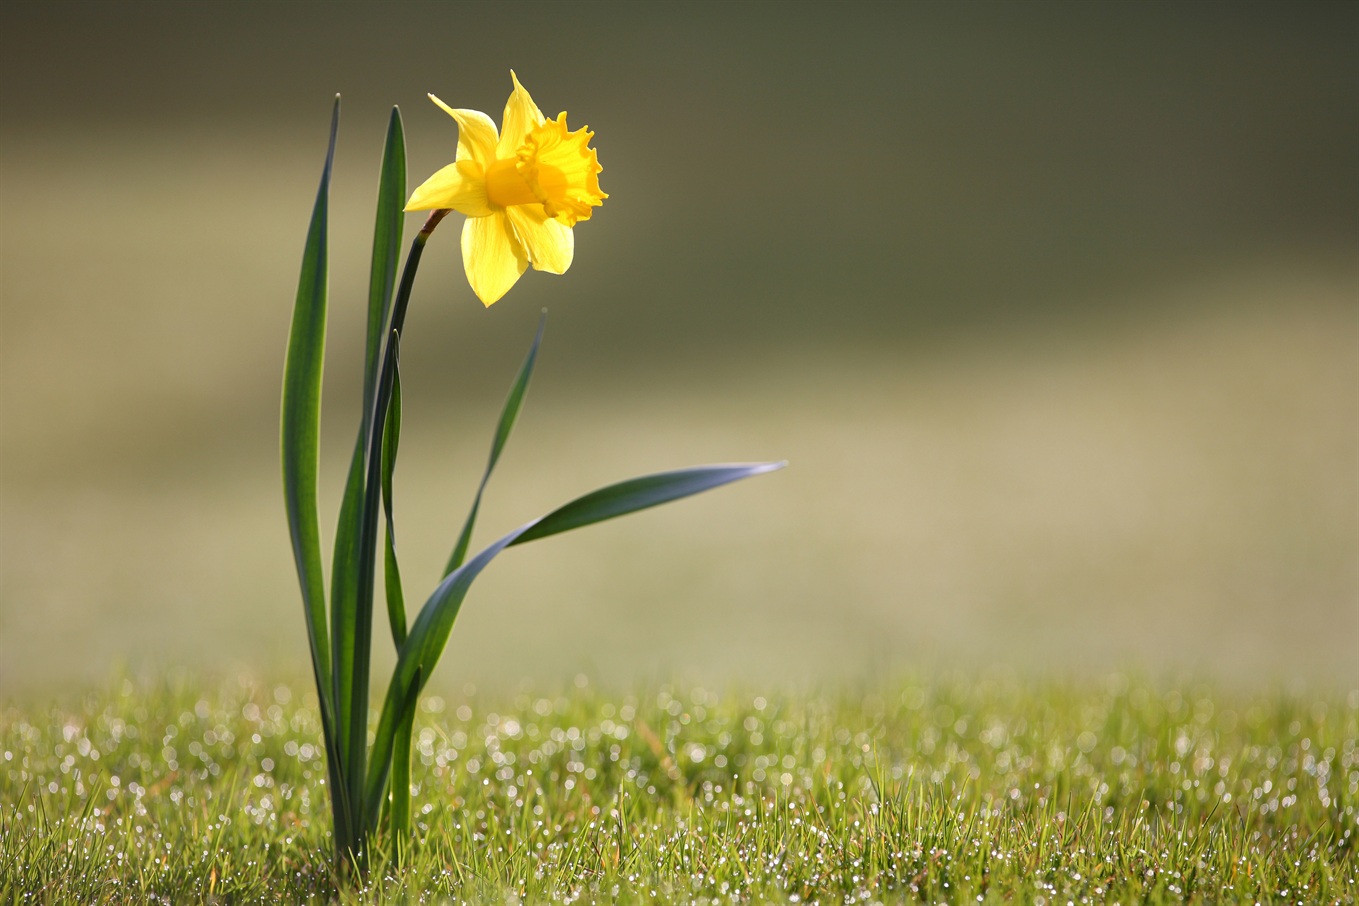 Imágenes de flores y plantas: Narciso